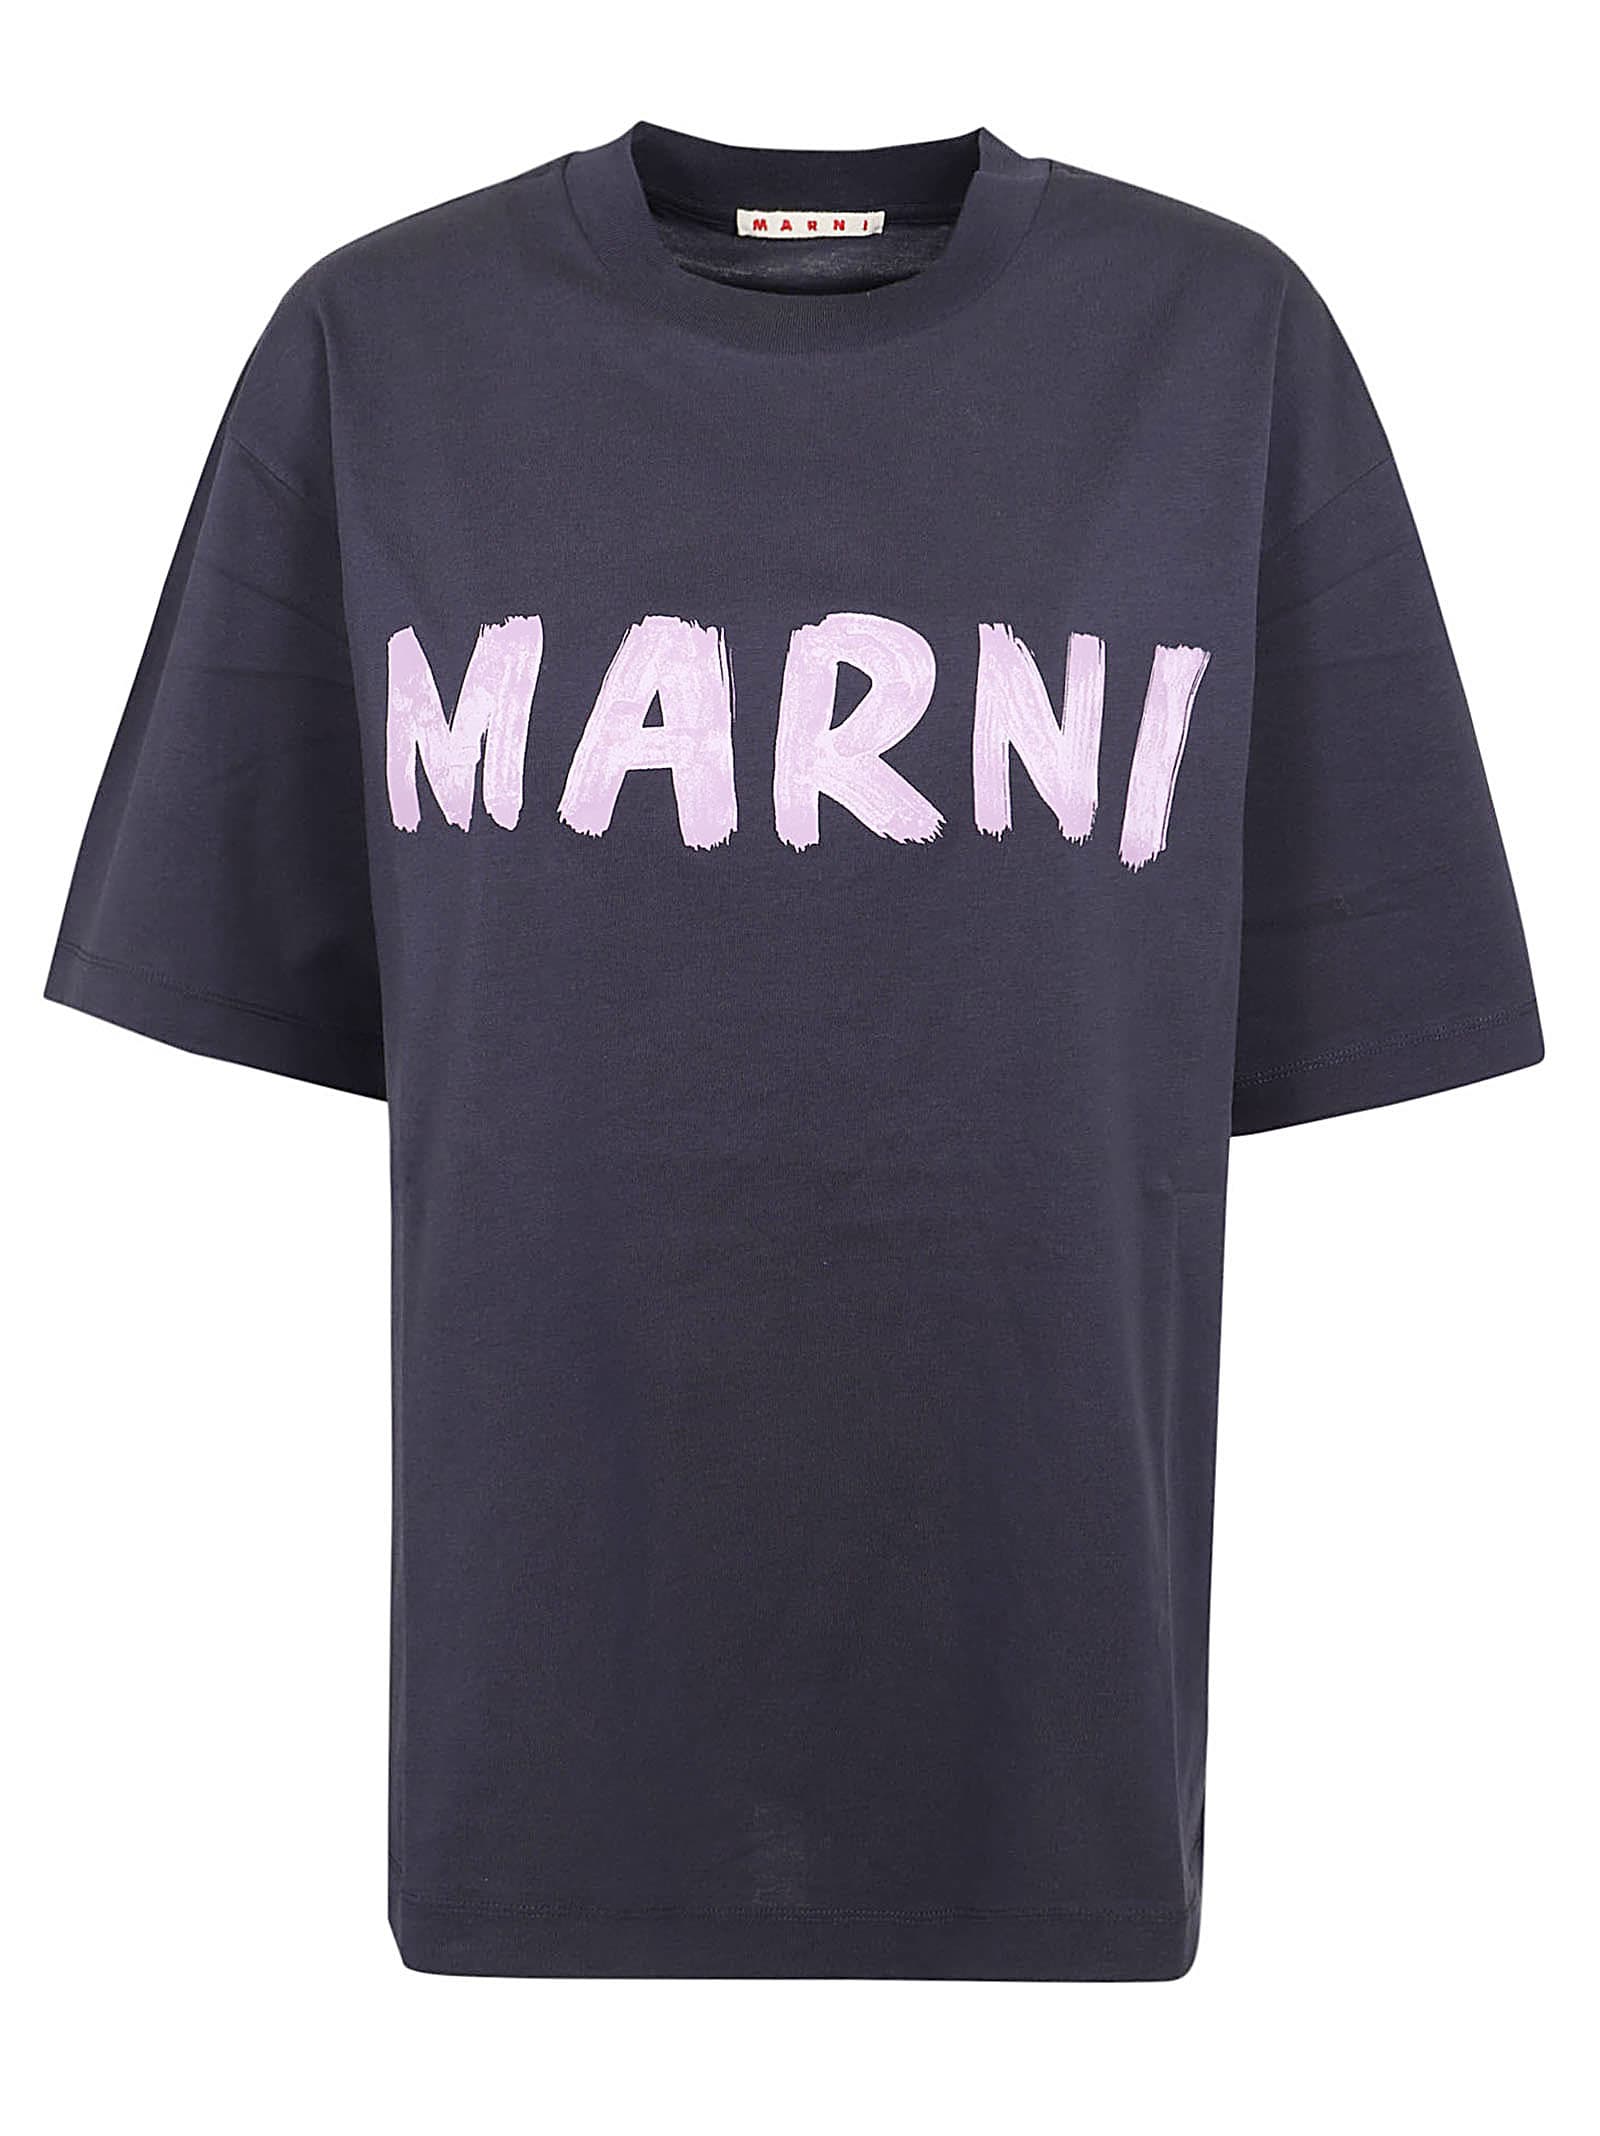 Marni T-shirt In Blublack